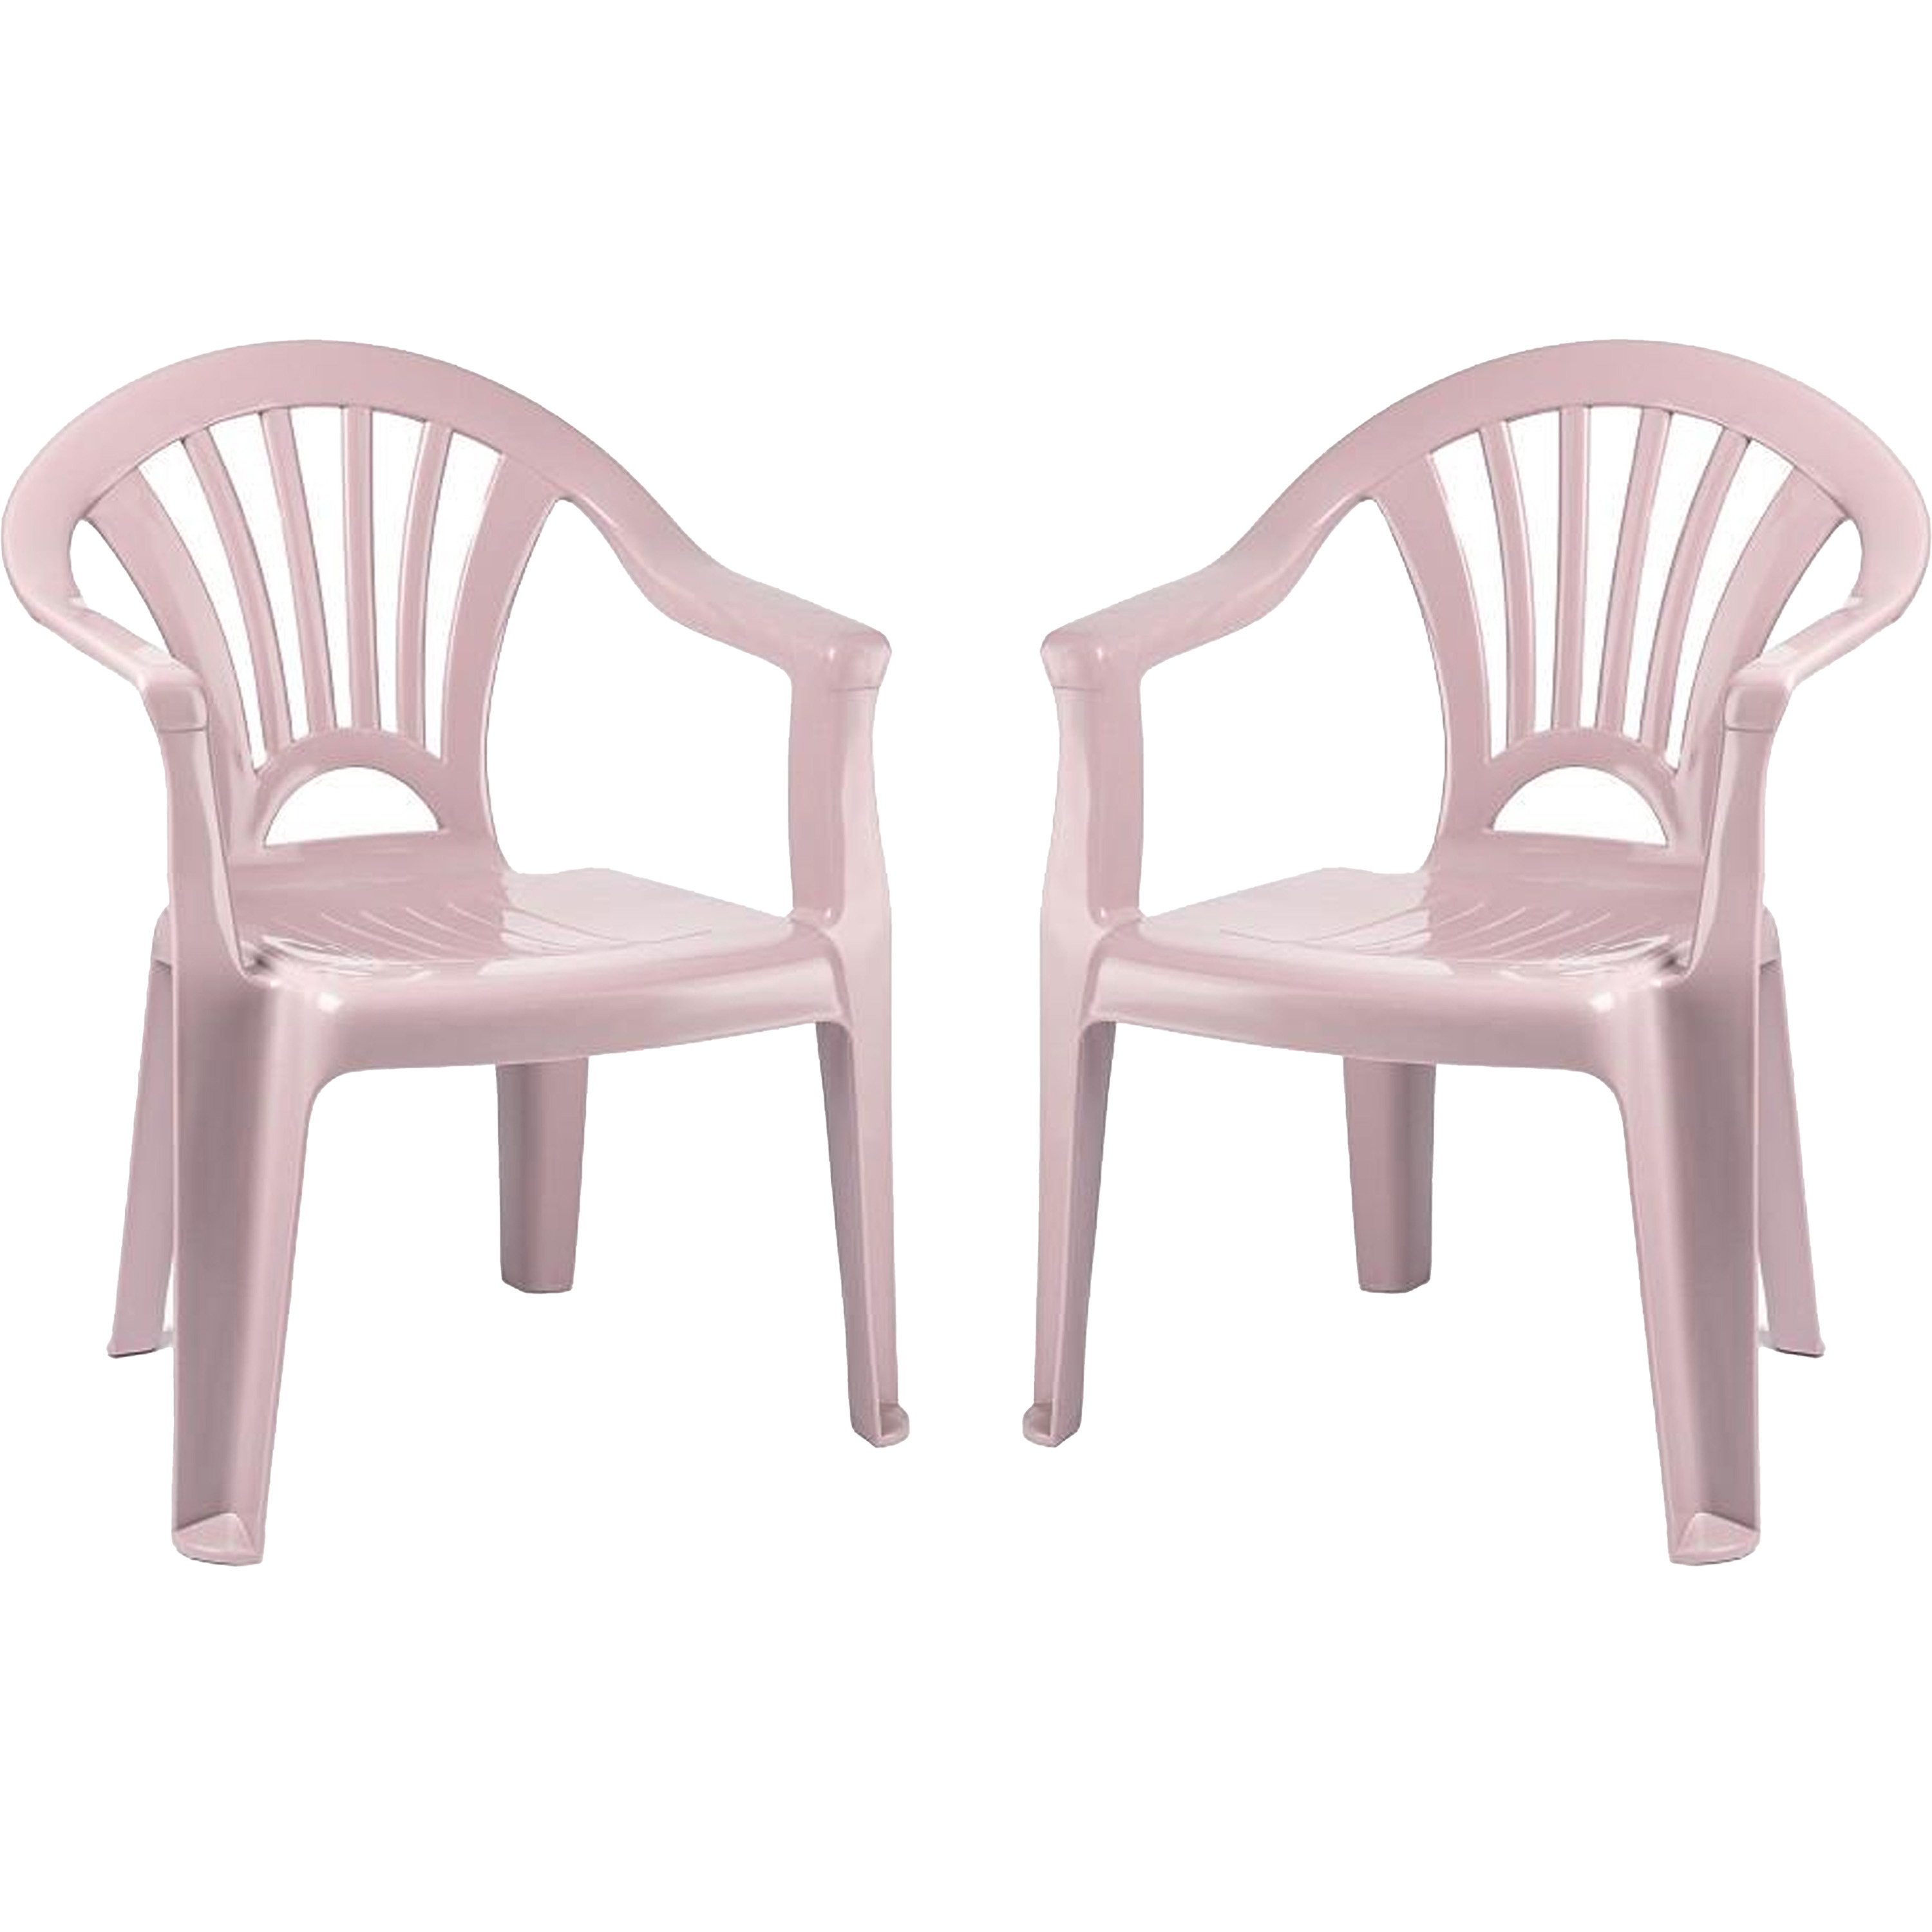 Plasticforte Kinderstoel 2x stuks kunststof roze 35 x 28 x 50 cm tuin-camping-slaapkamer